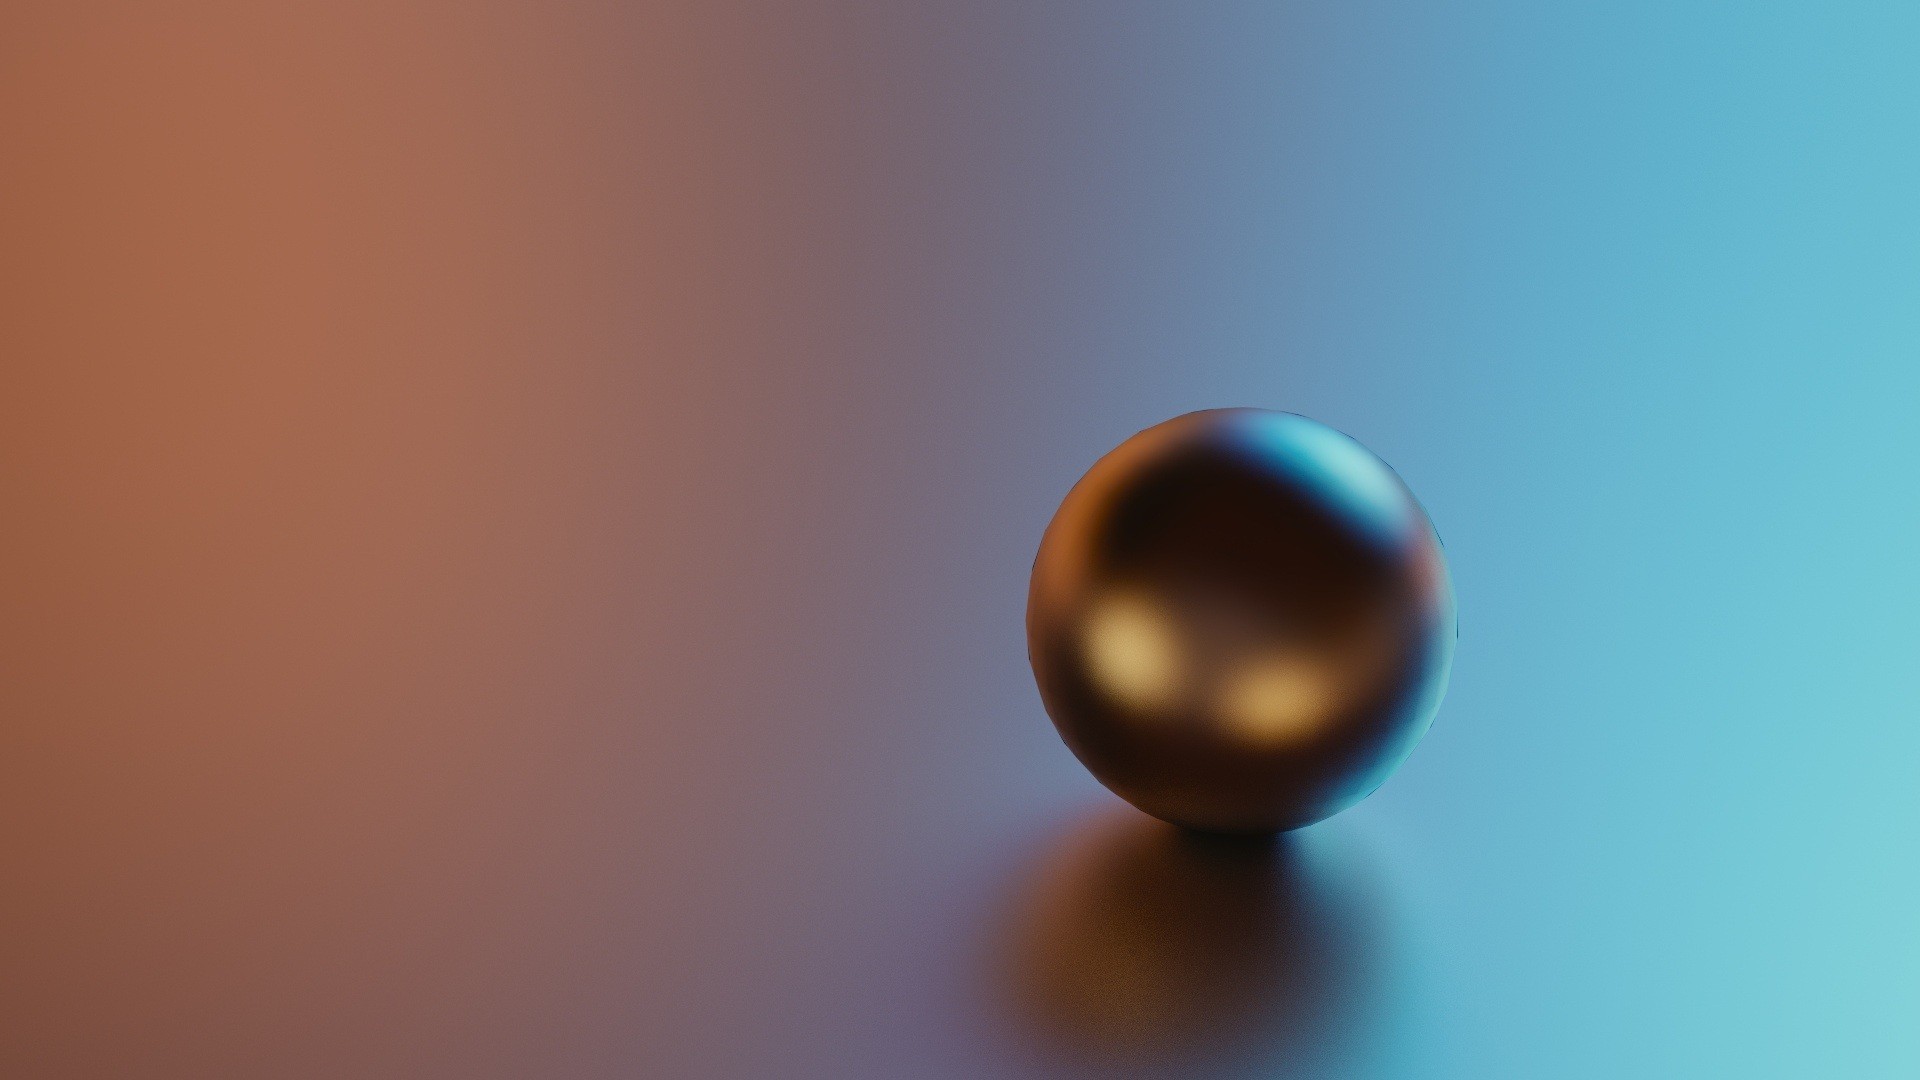 General 1920x1080 CGI minimalism gradient ball digital art brown